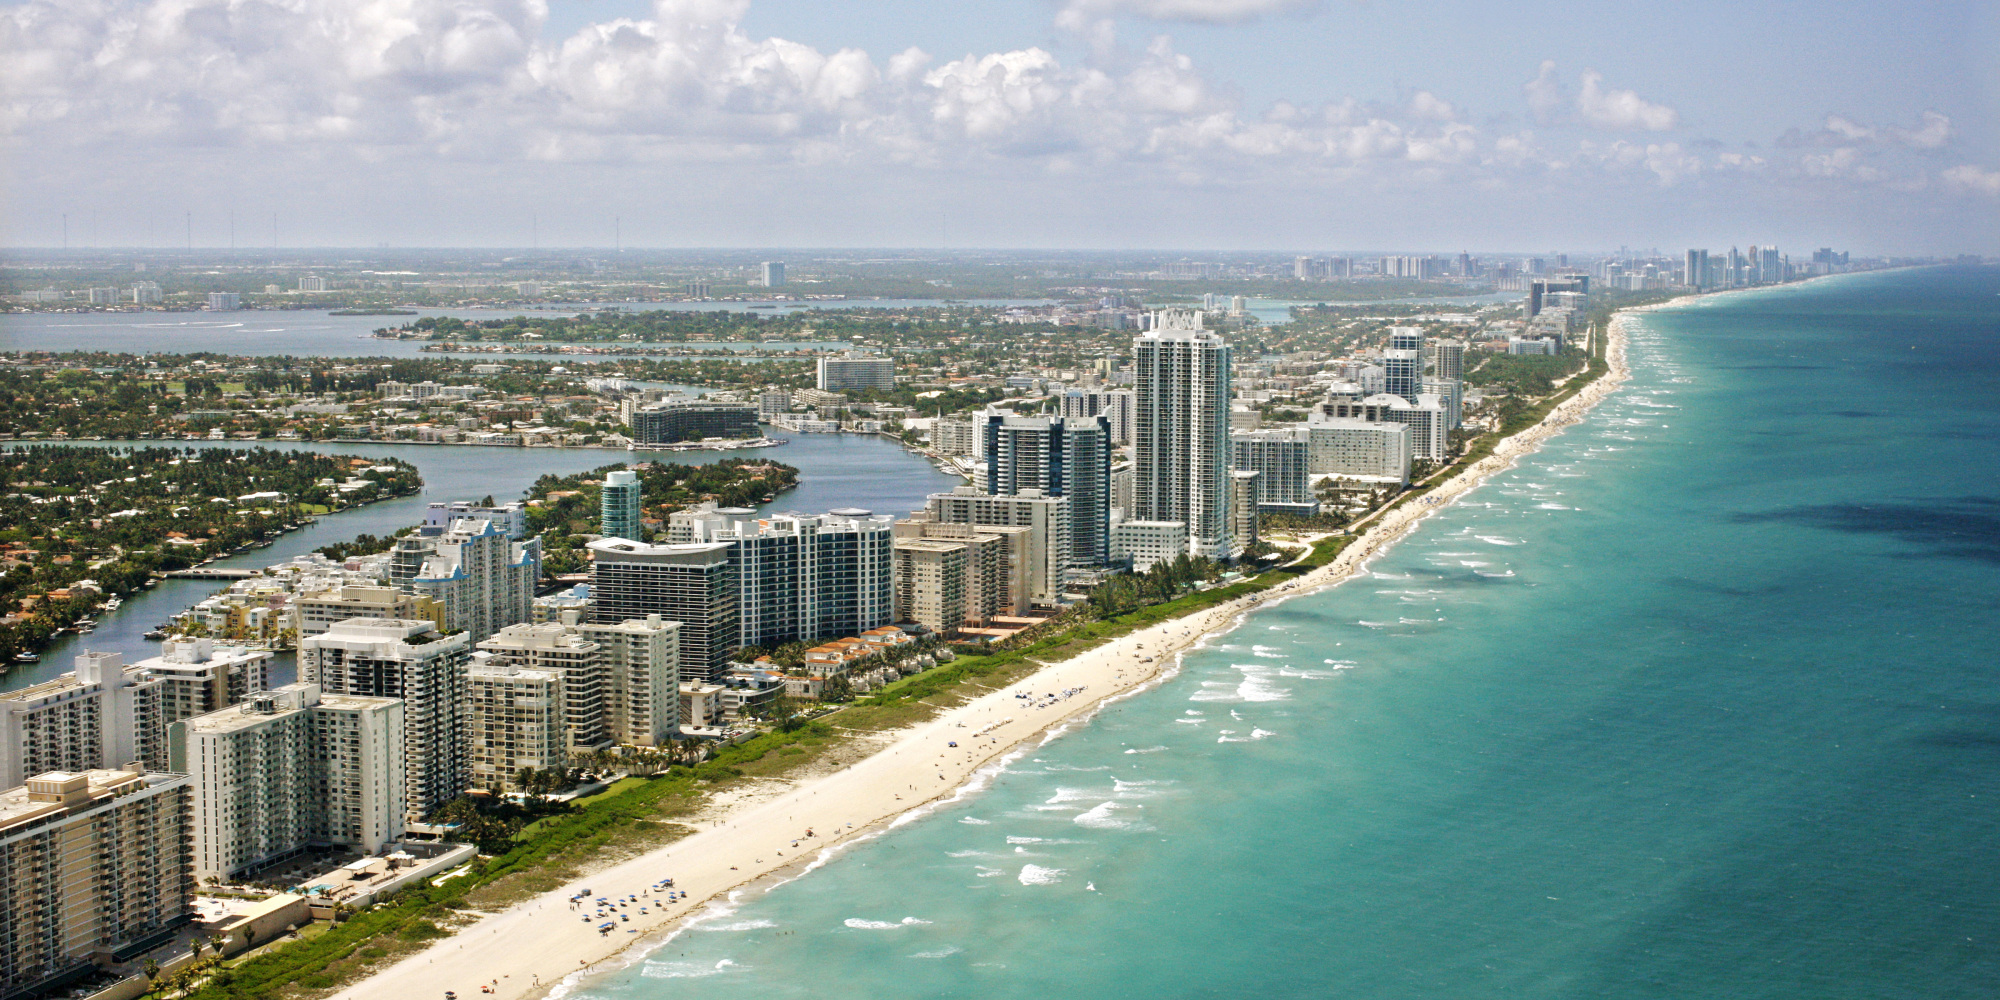 Costa de Miami Beach, Florida (Photo de Hoberman Collection/UIG via Getty Images)